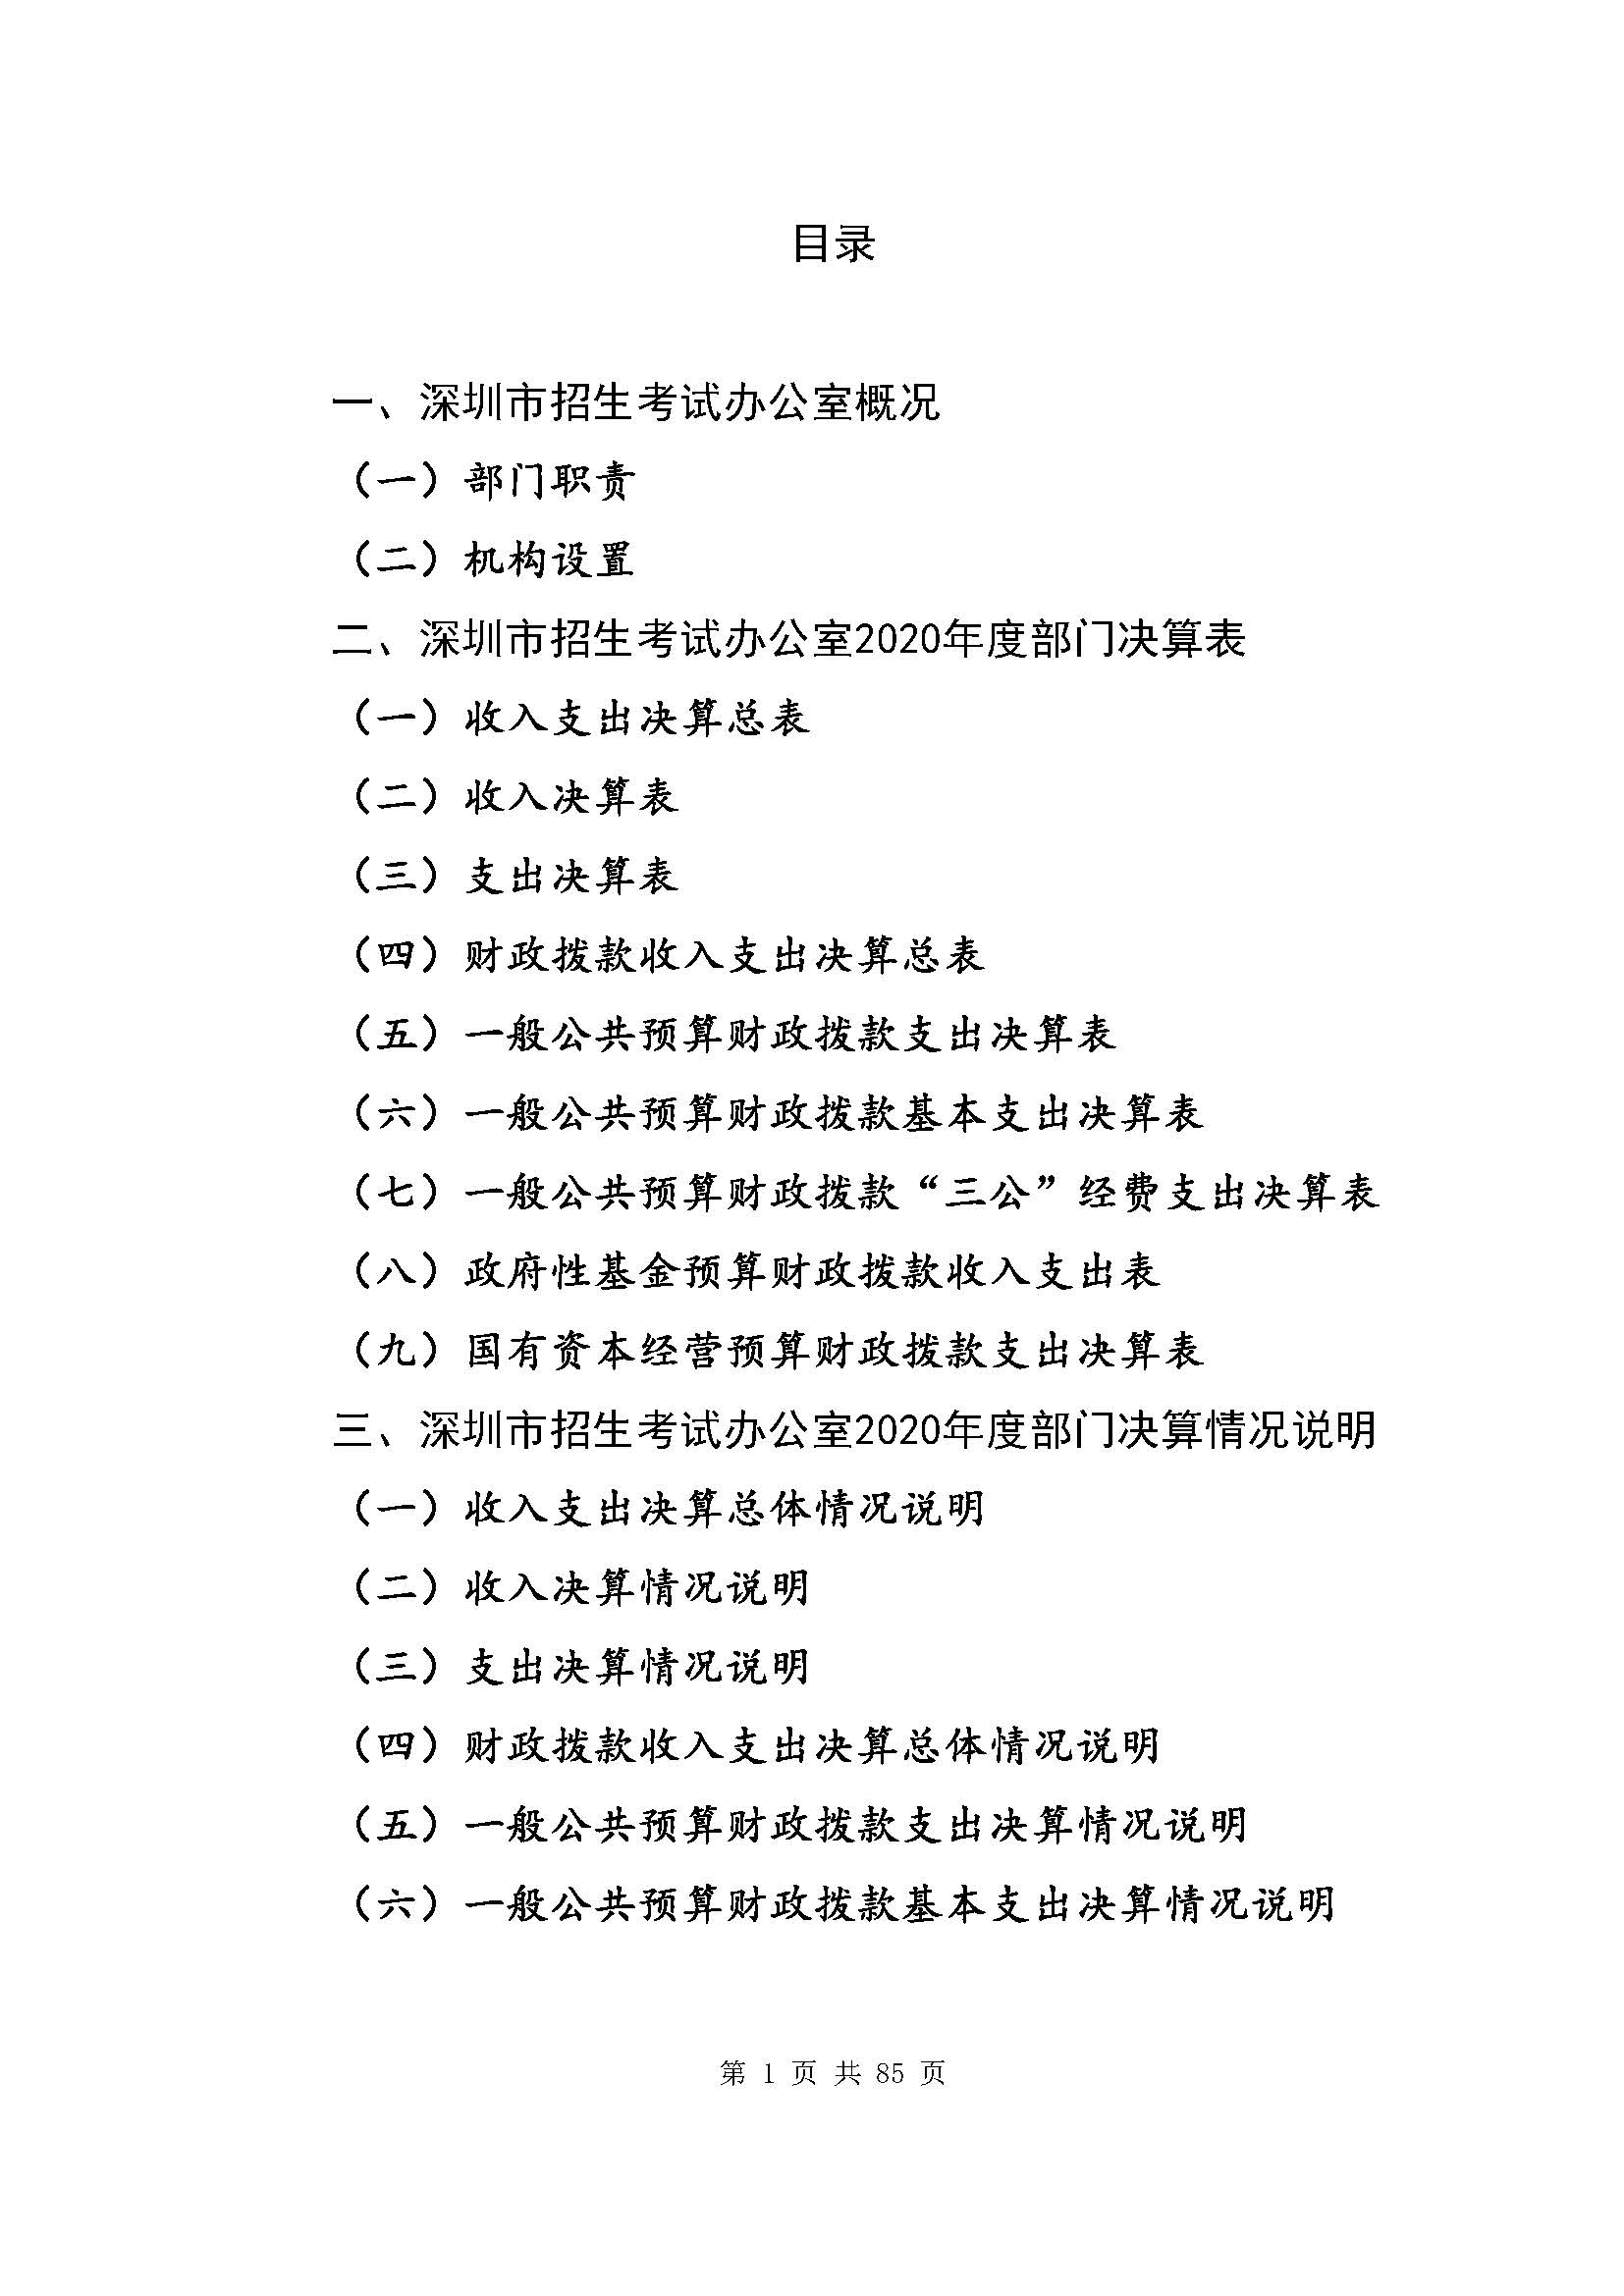 深圳市招生考试办公室2020年度部门决算_页面_02.jpg